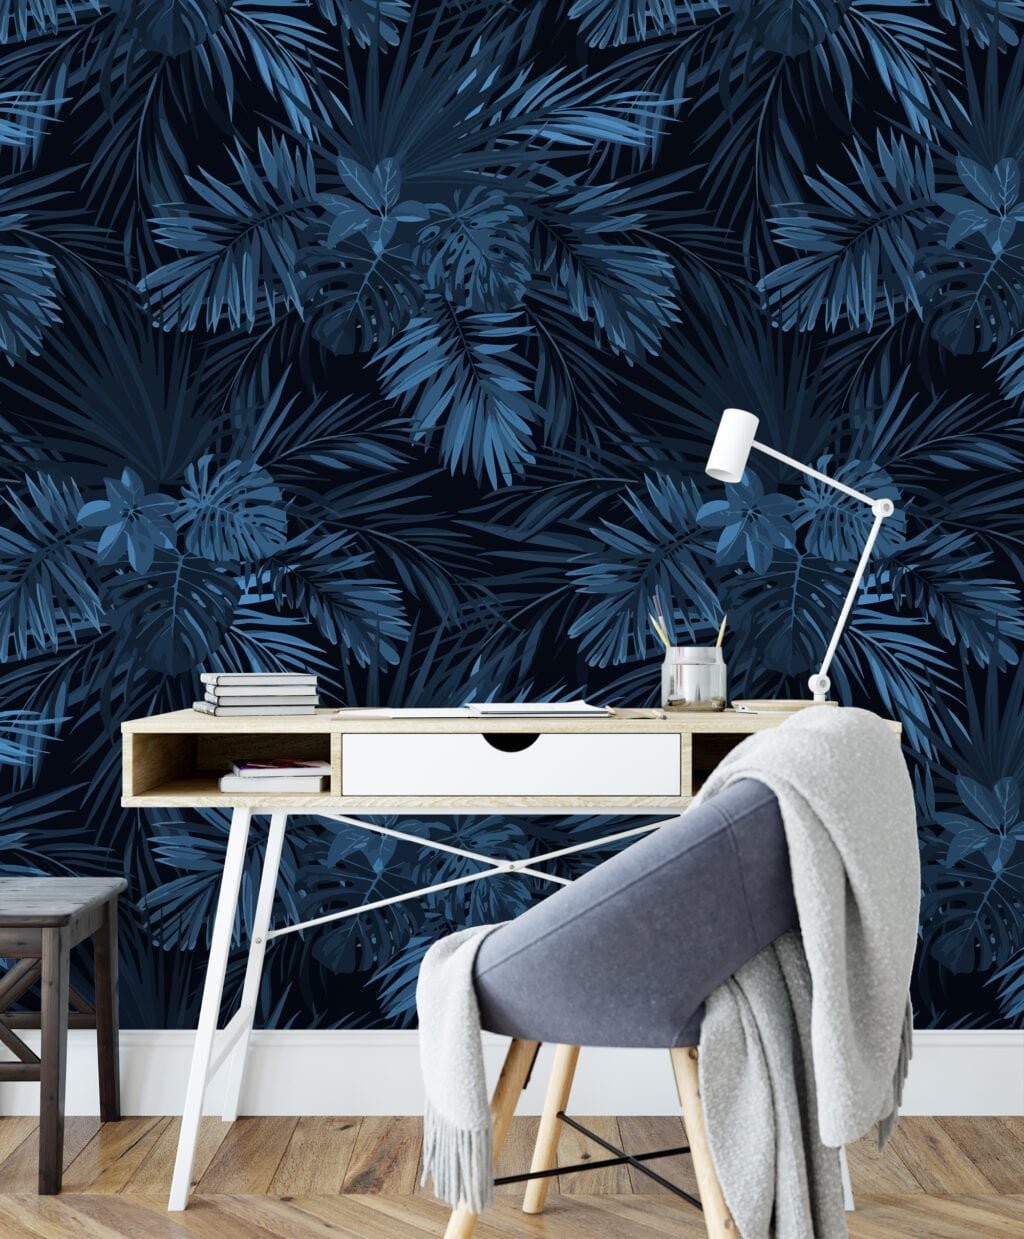 Gece Mavisi Tropikal Yapraklar Duvar Kağıdı, Lüks Koyu Yaprak Desenli 3D Duvar Posteri Yaprak Desenli Duvar Kağıtları 4